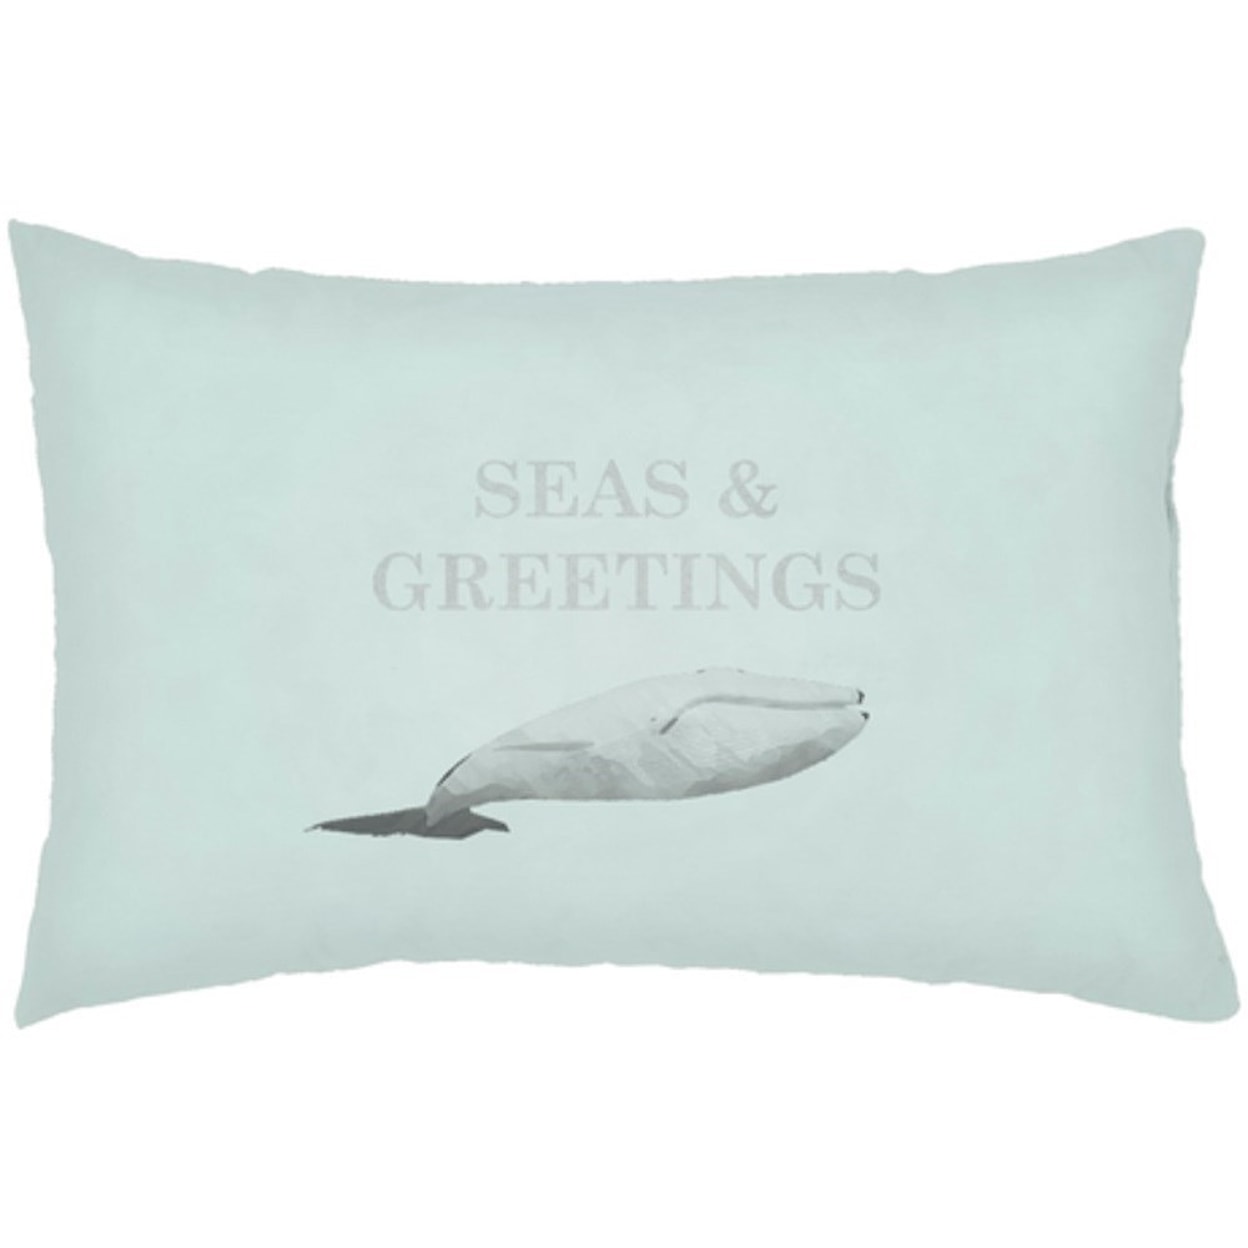 Surya Seas & Greetings Pillow